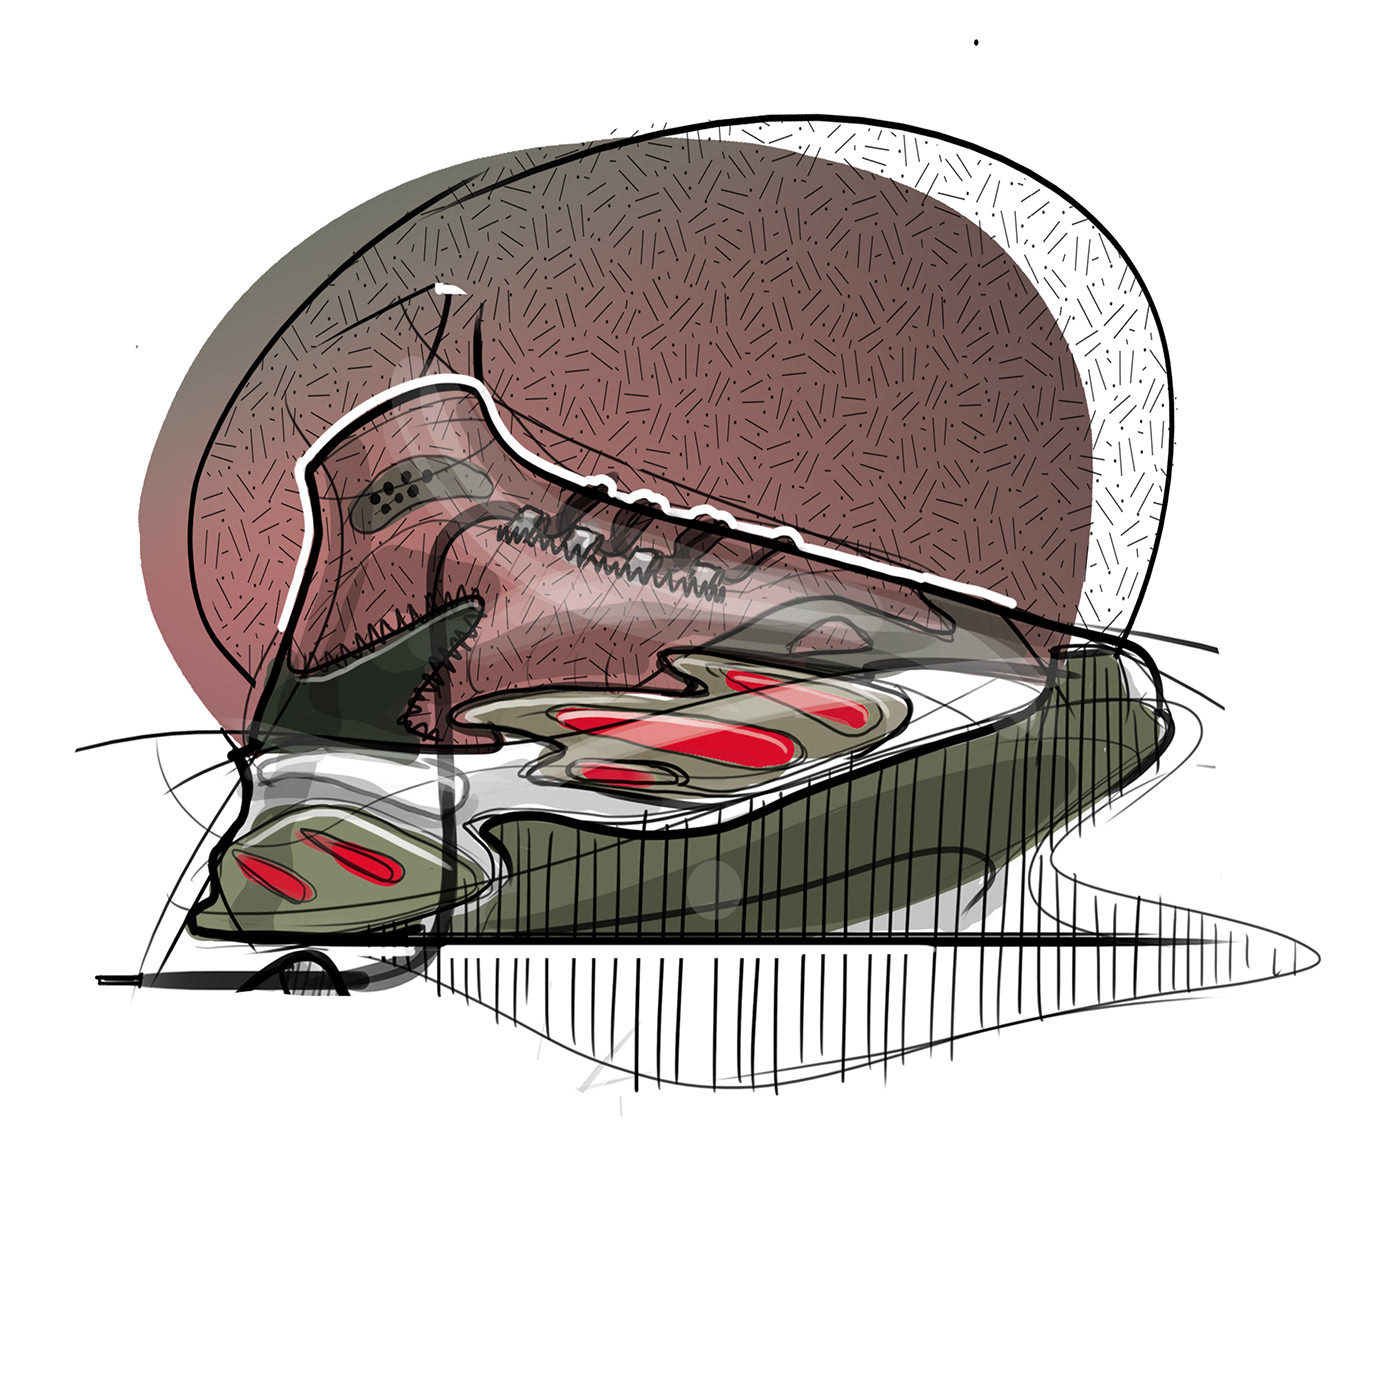 footwear illutration rendering shoes sketch sneakers